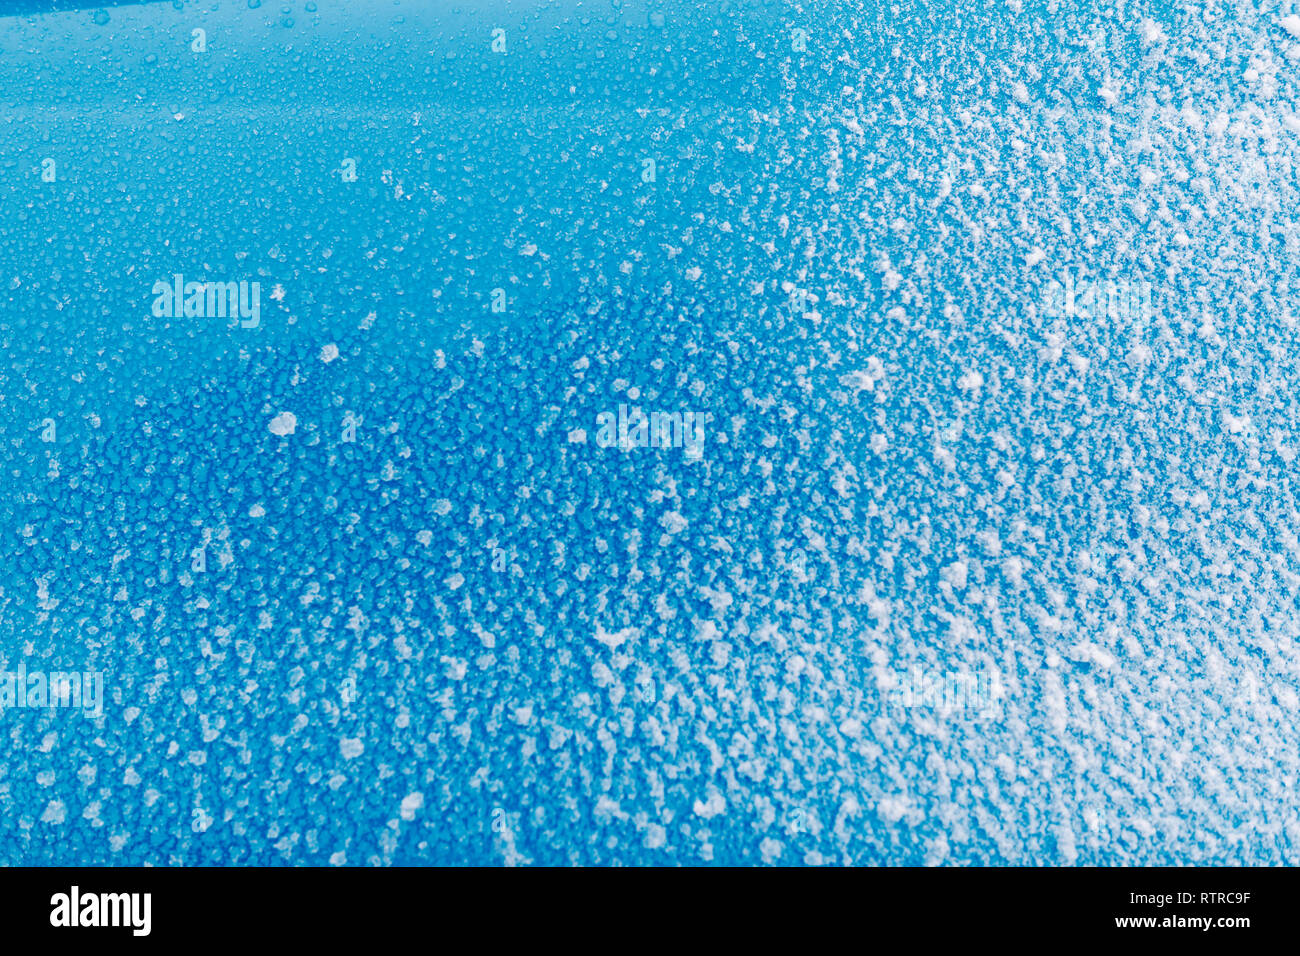 Sticky neve sulla superficie blu. Il ghiaccio, il freddo. Foto Stock